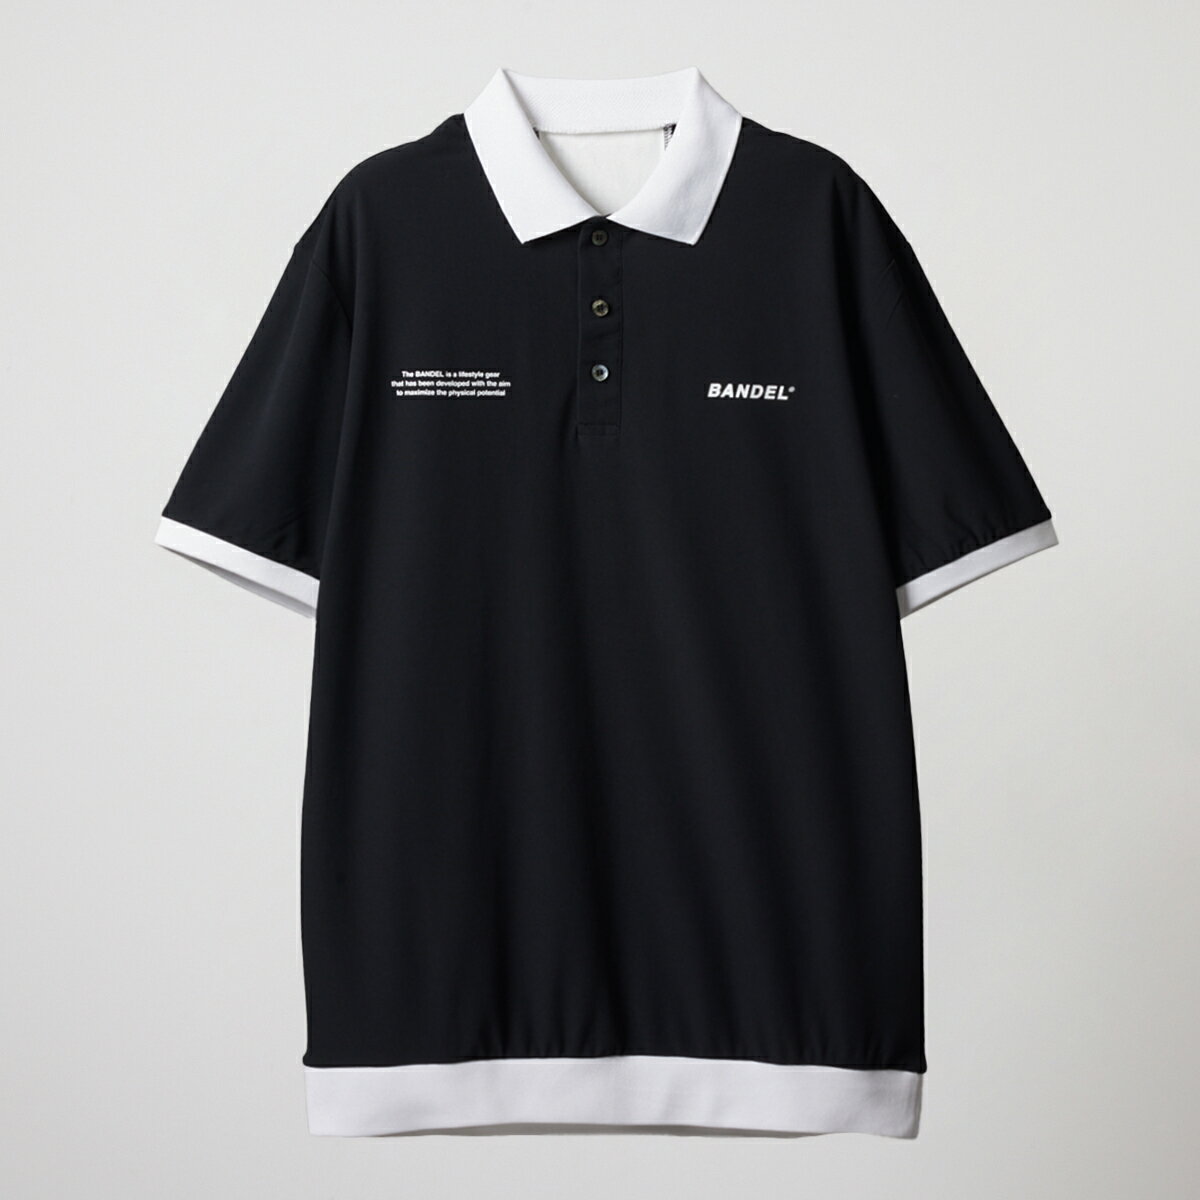 バンデル ゴルフ BICOLOR RIB S/S POLO SHIRTS BANDEL ポロシャツ シャツ ホワイト ブラック メンズ スポーツ 男性 バンデルゴルフ